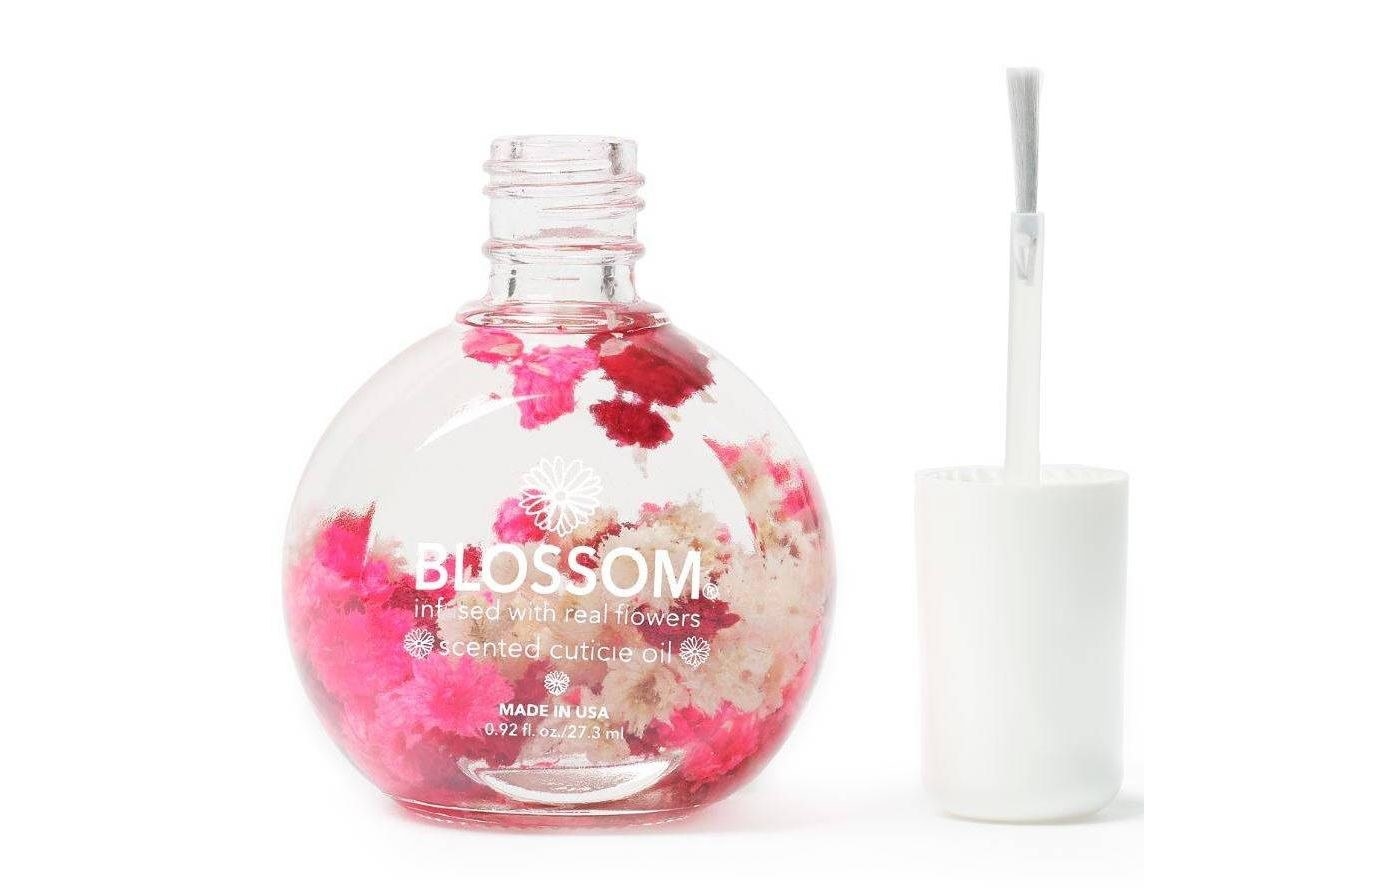 The Blossom cuticle oil